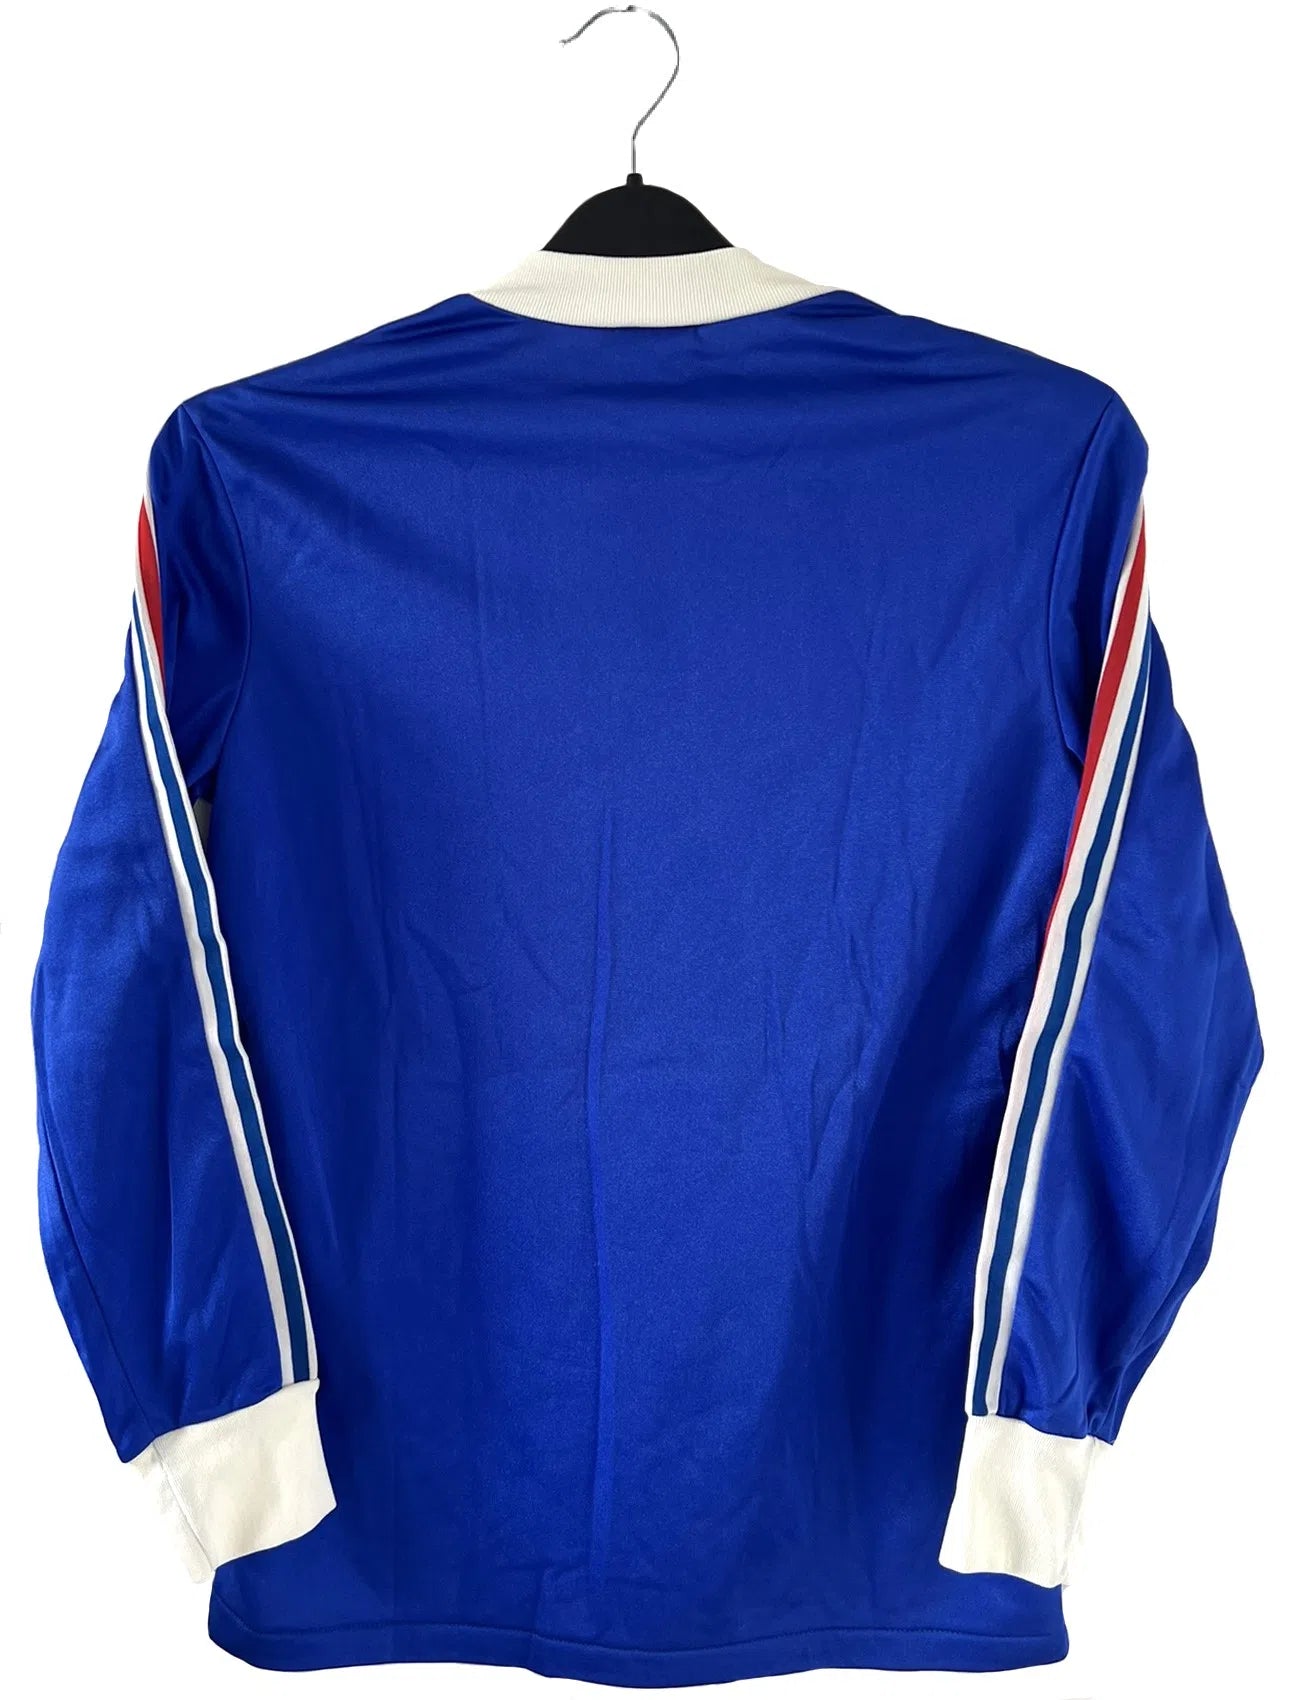 Maillot de foot vintage de l'équipe de france bleu blanc et rouge. Il s'agit du maillot domicile édité lors de la coupe du monde 1978. On peut retrouver l'équipementier adidas. Il s'agit d'un maillot authentique